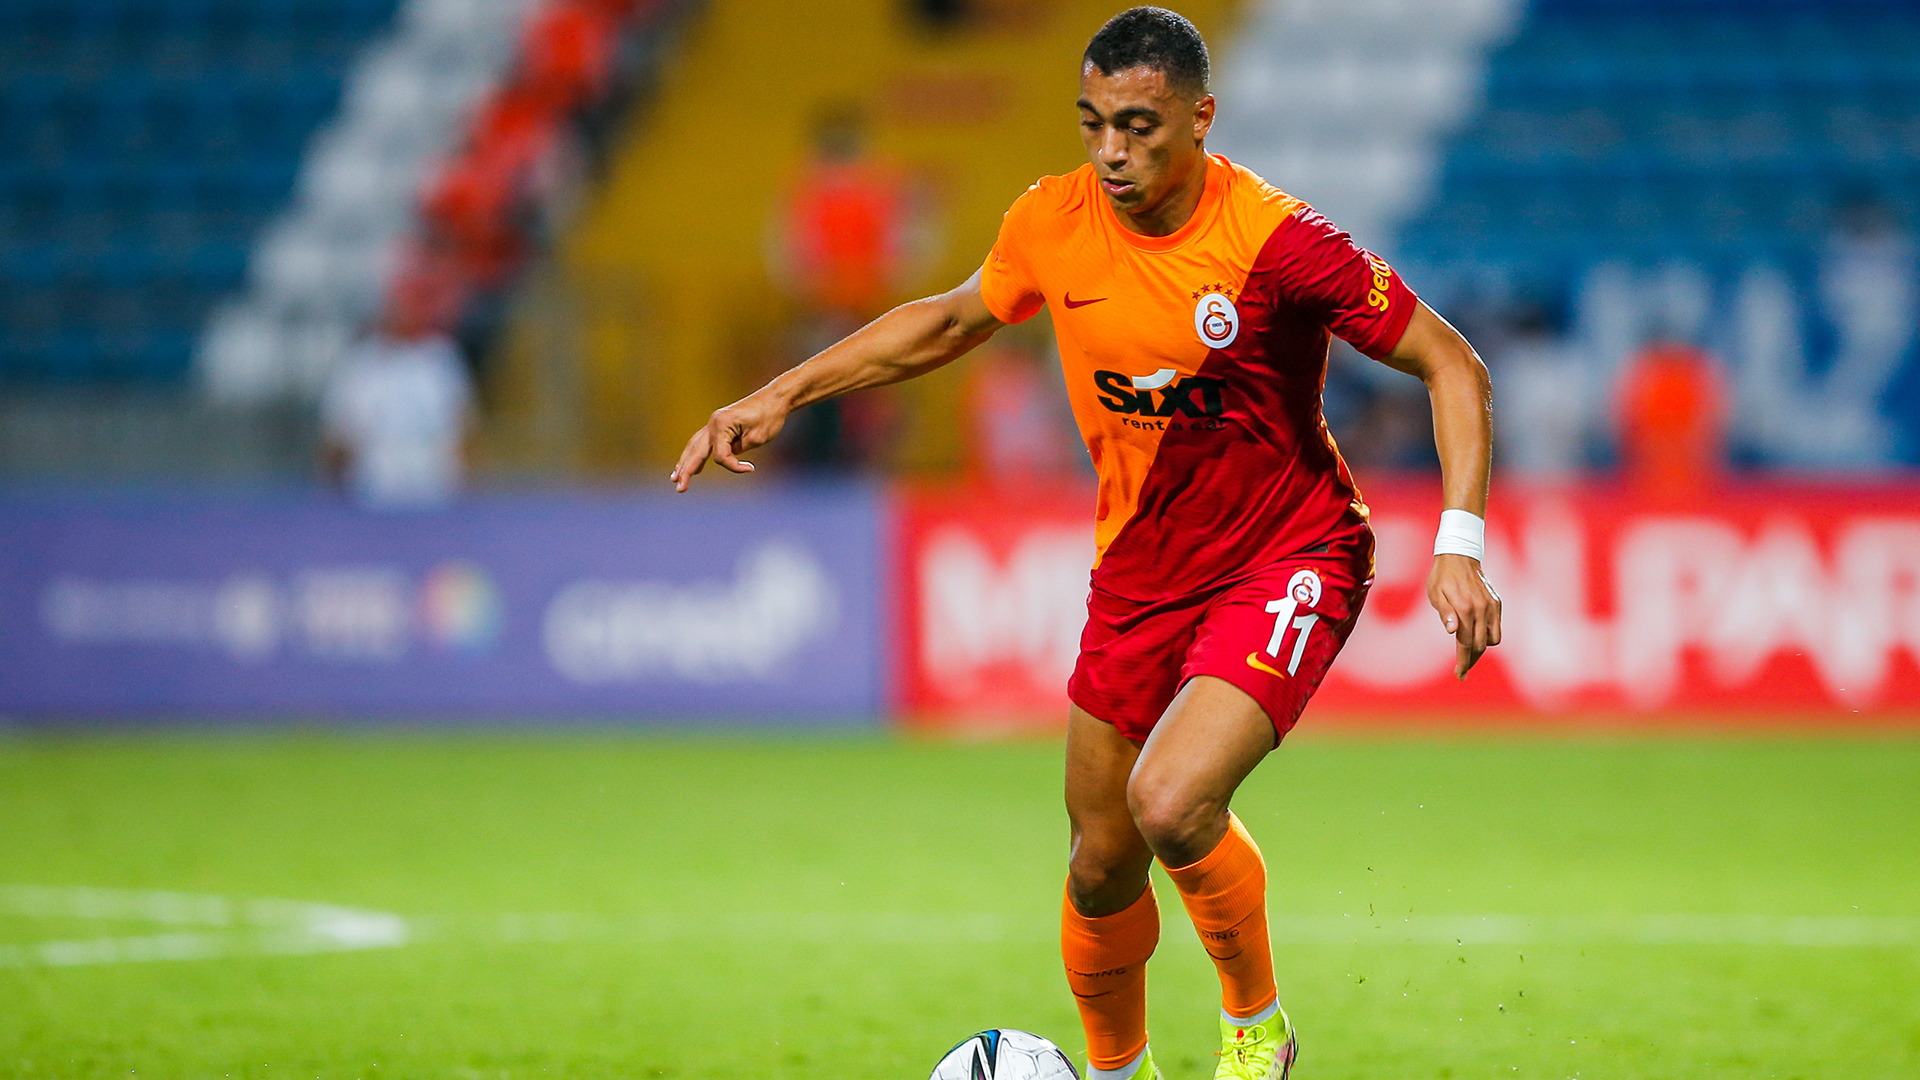 El delantero Mostafa Mohamed juega en el Galatasaray de Turquía (Getty Images)